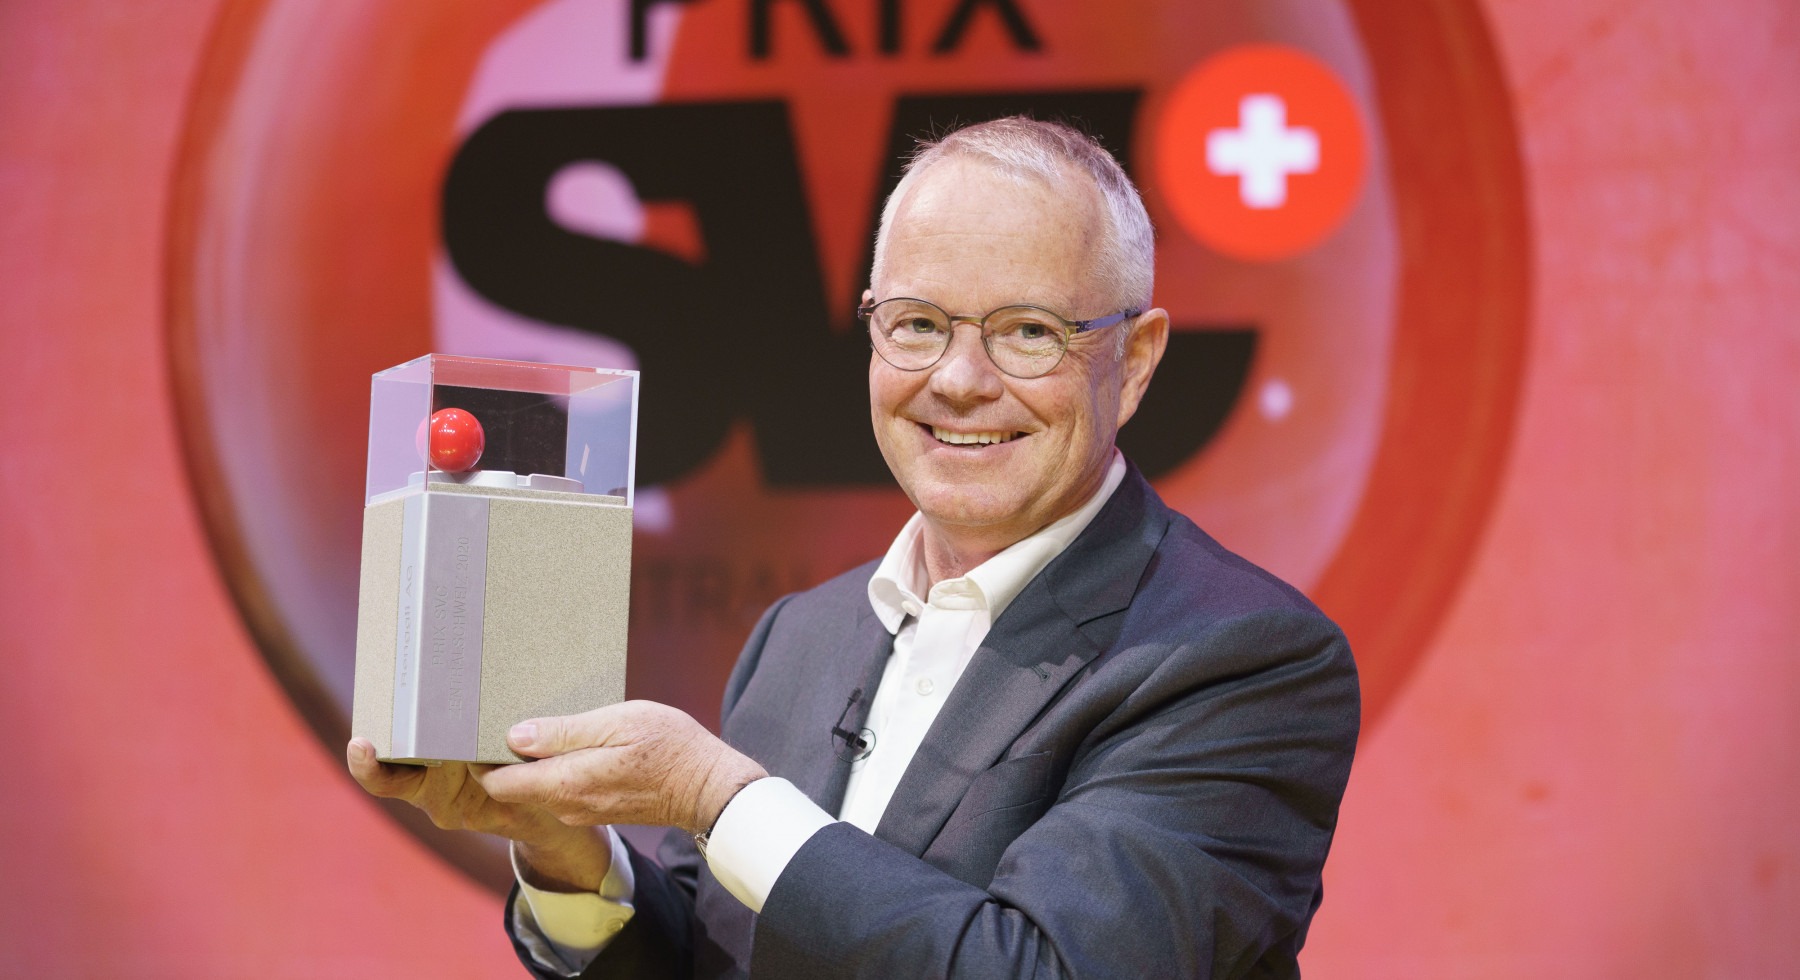 Der Gewinner Max Renggli, CEO & VR Praesident Renggli AG an der Preisverleihung des Prix SVC Zentralschweiz 2020